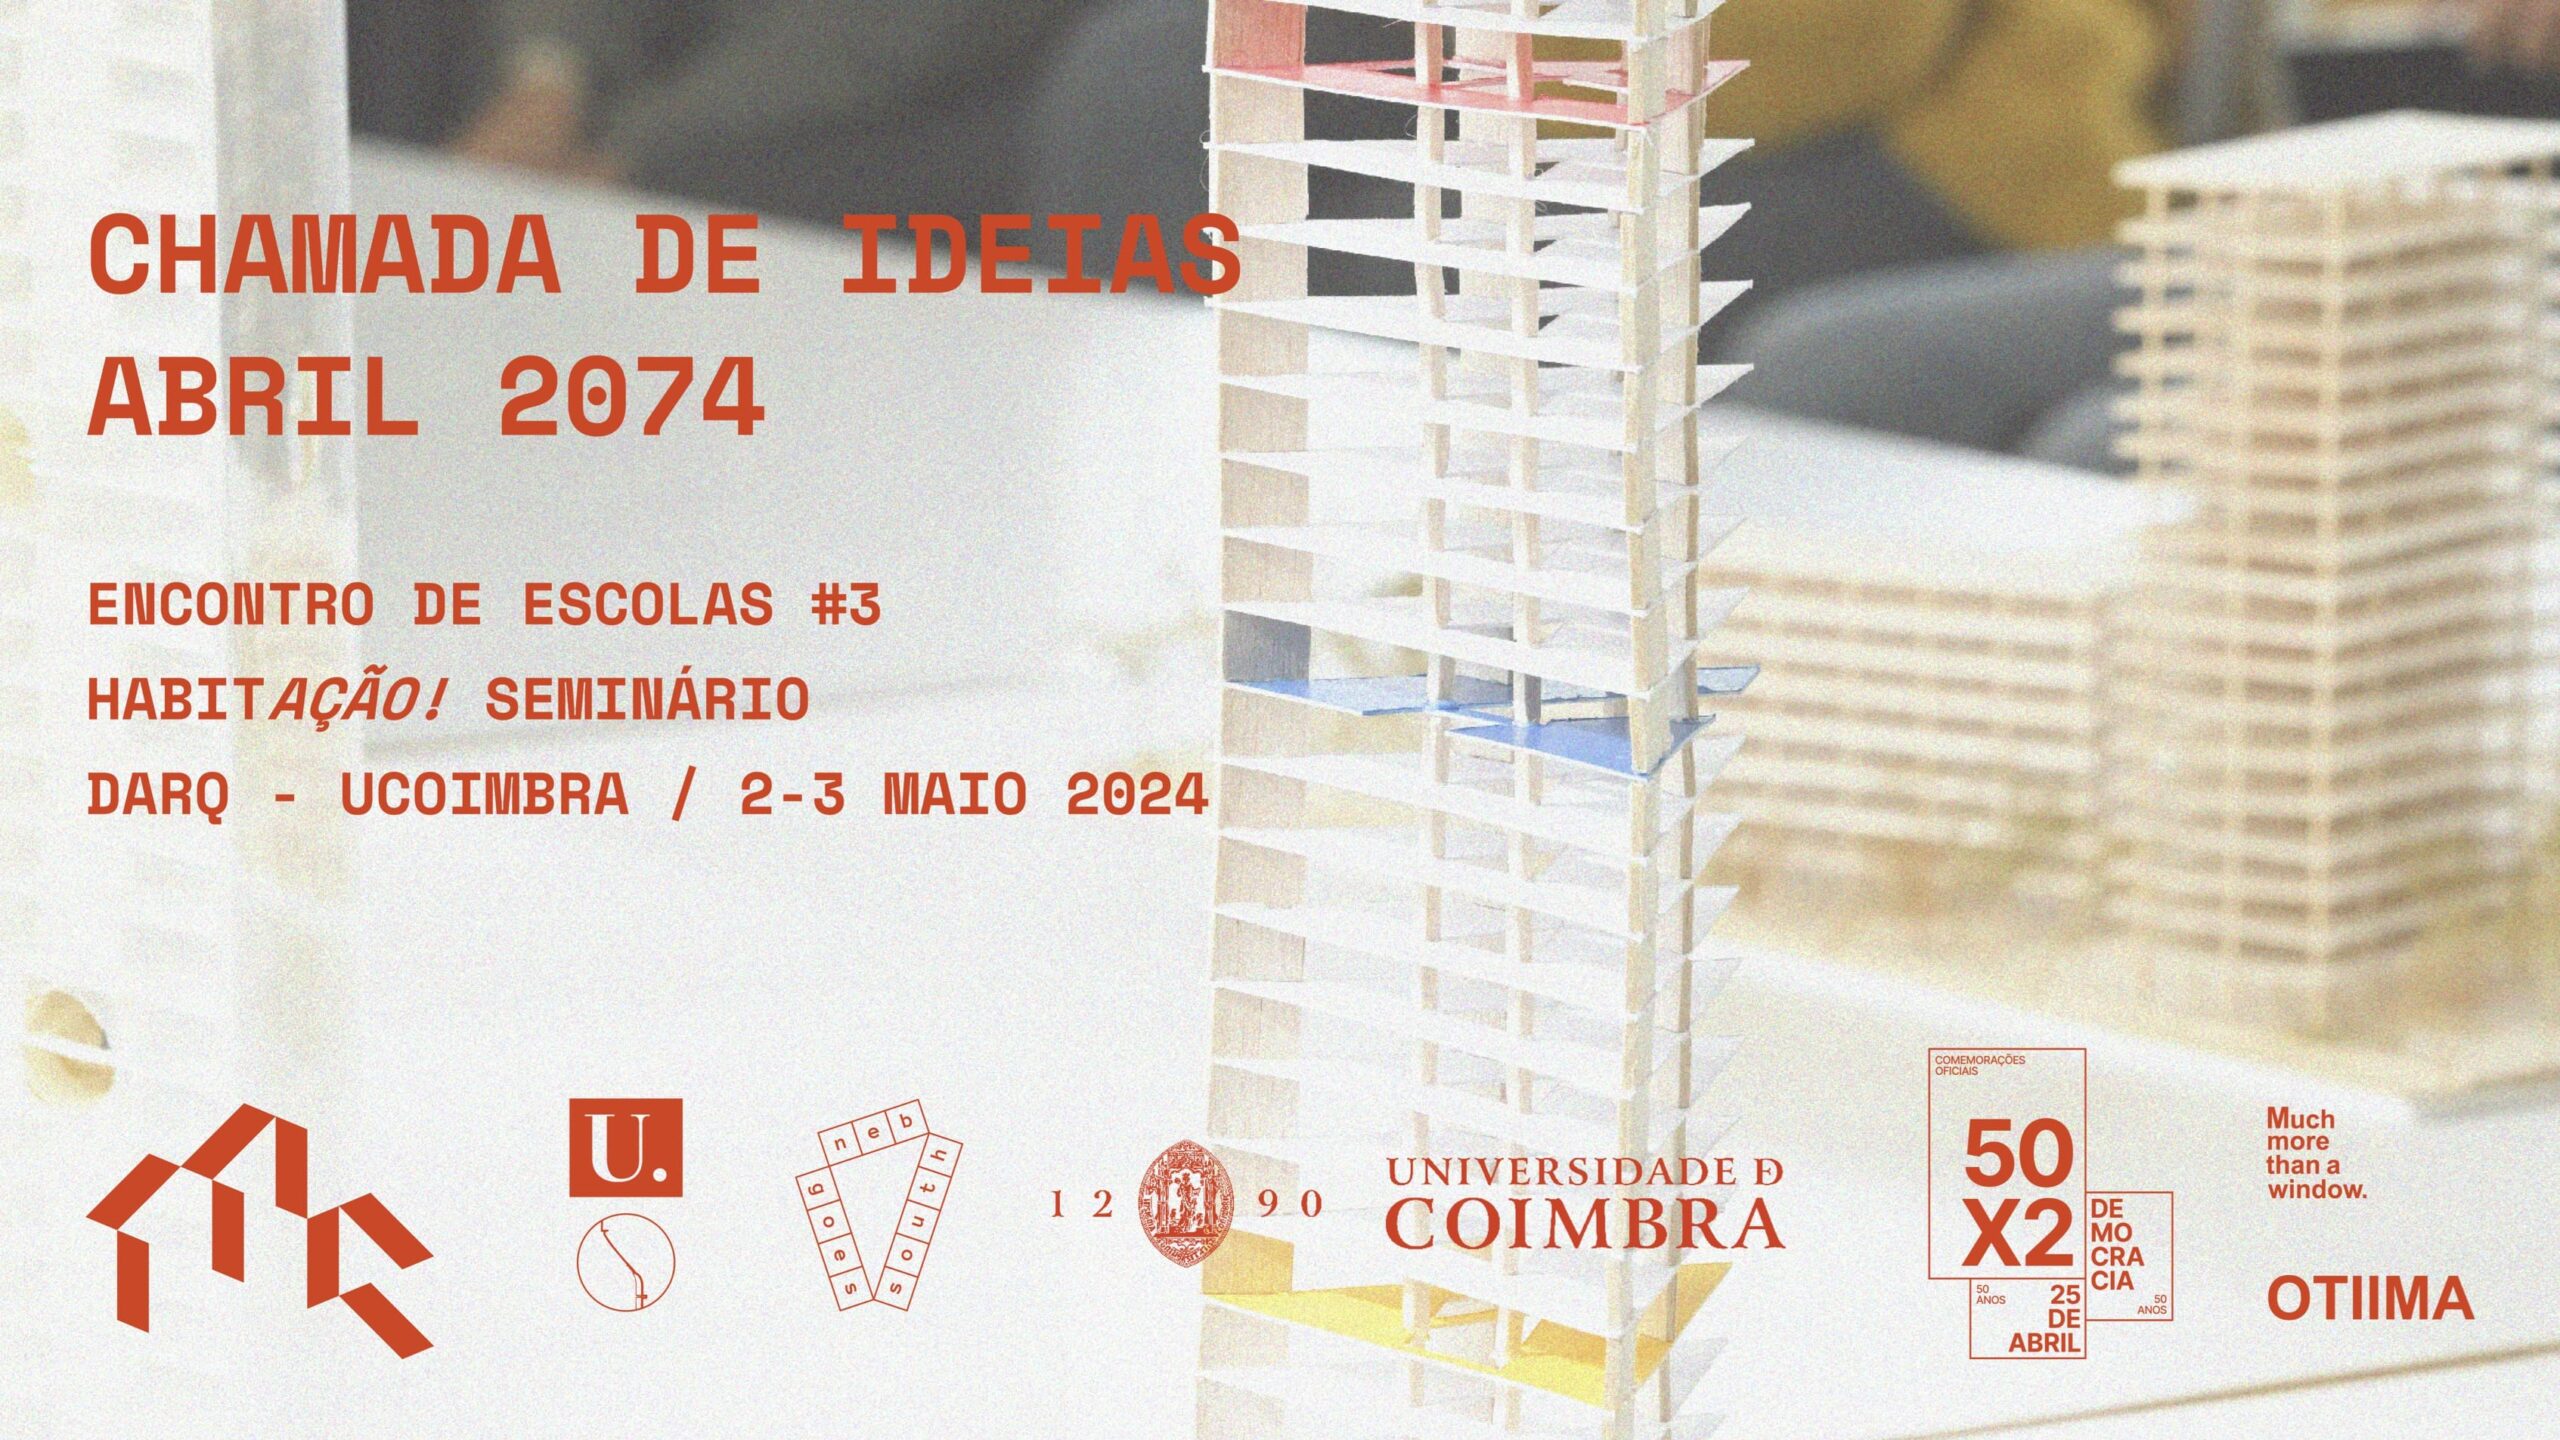 Capa do Evento Encontro Escolas #3 Chamada de Ideias - Abril 2074 / Mais do que Casas